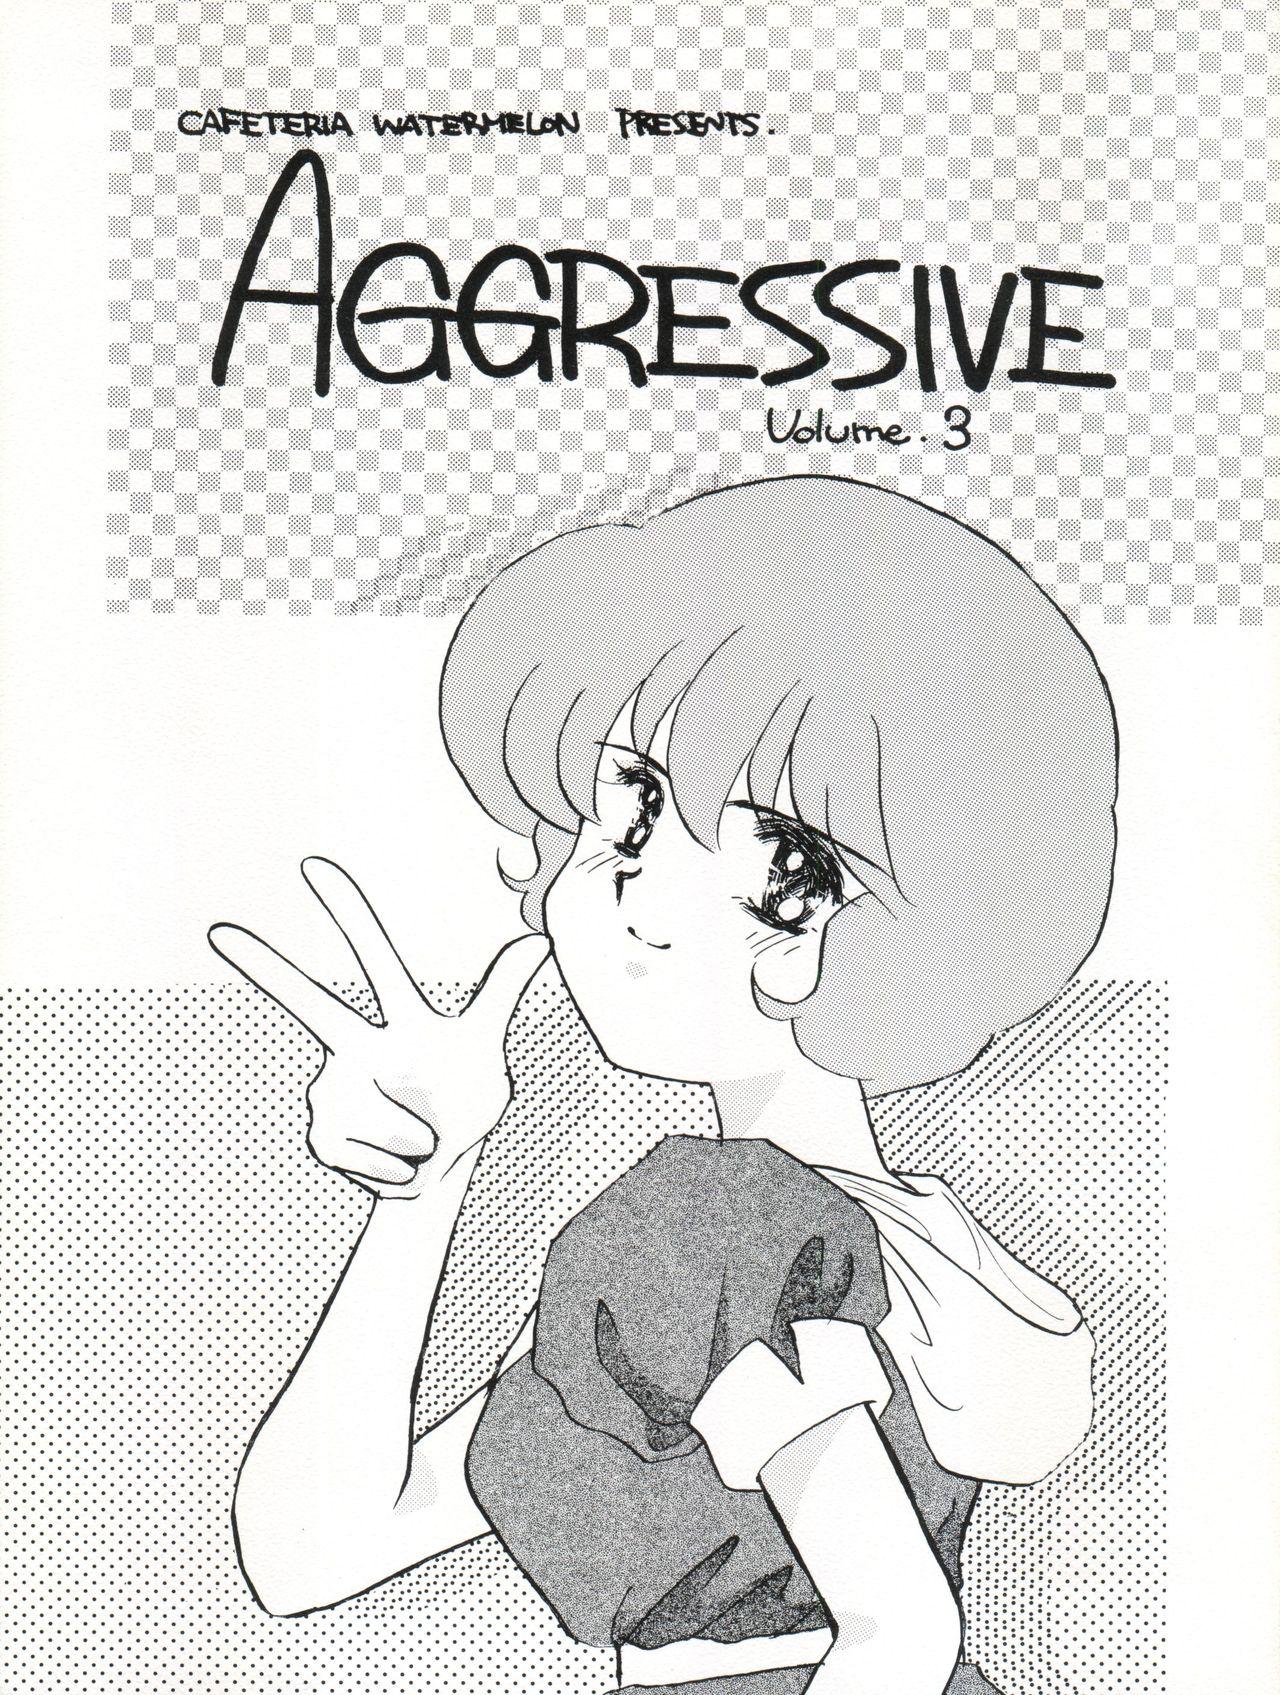 AGGRESSIVE Vol. 3 0